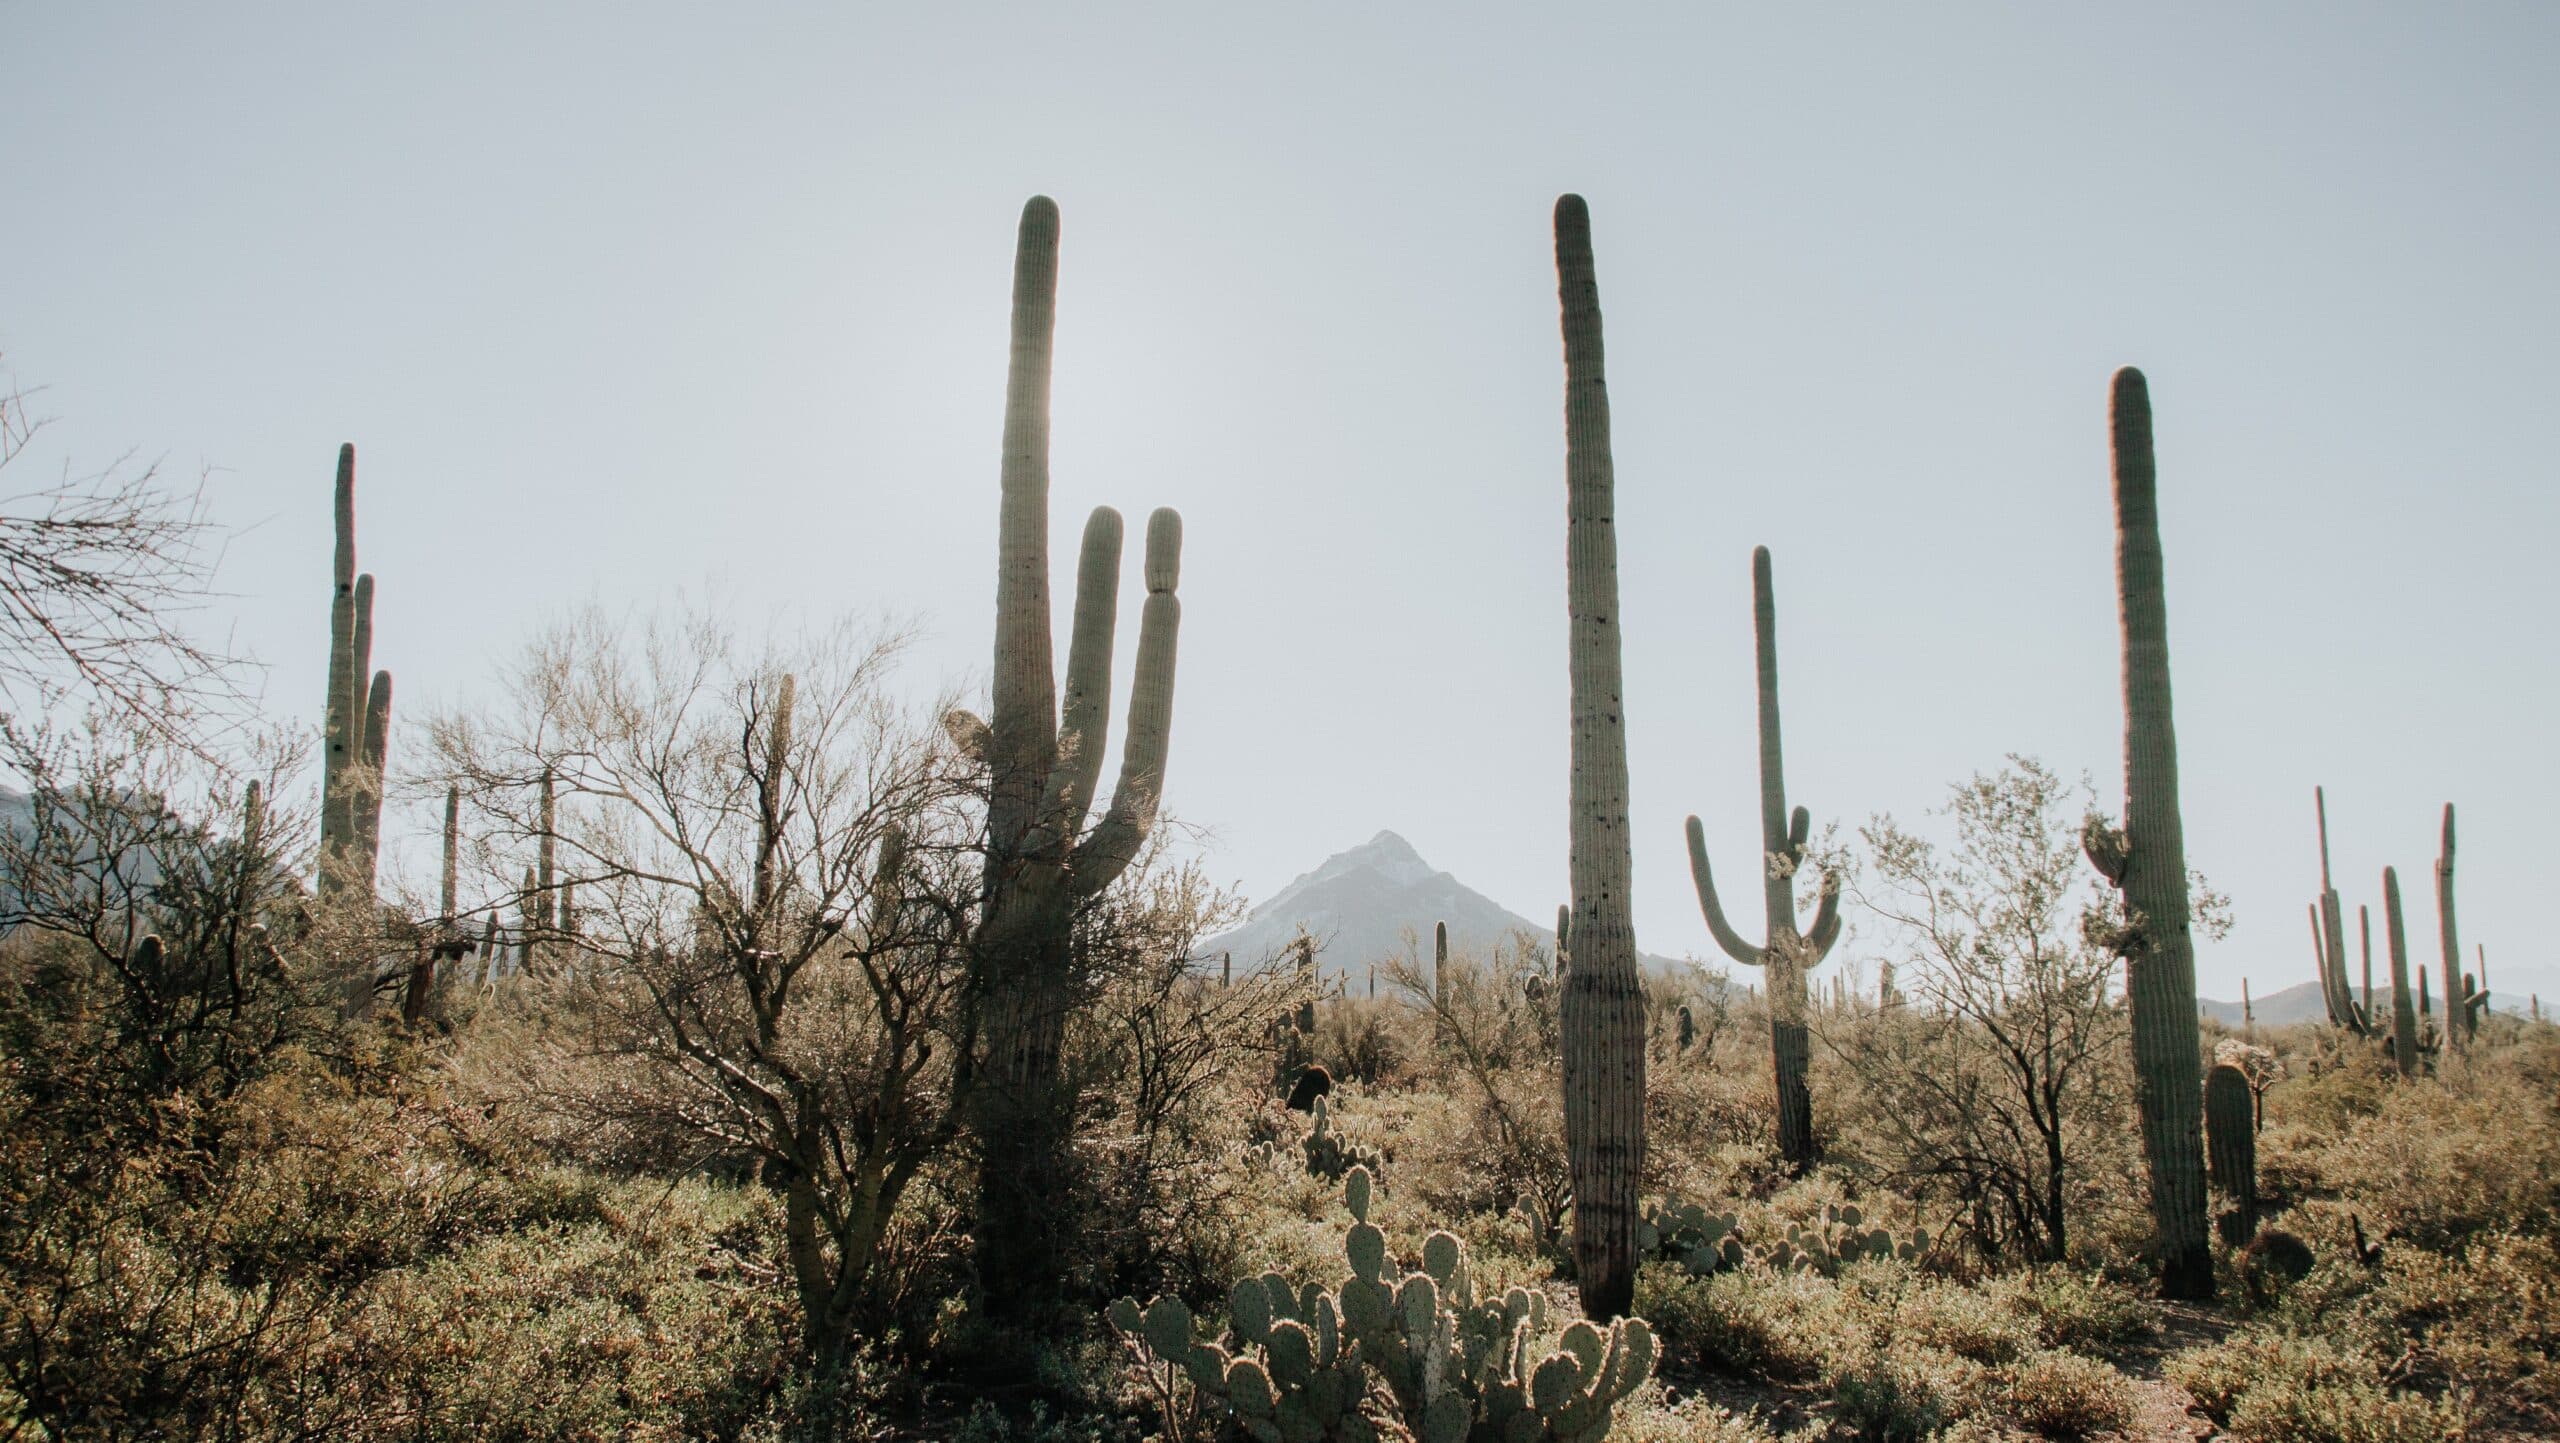 Saguaro Cactus, Arizona